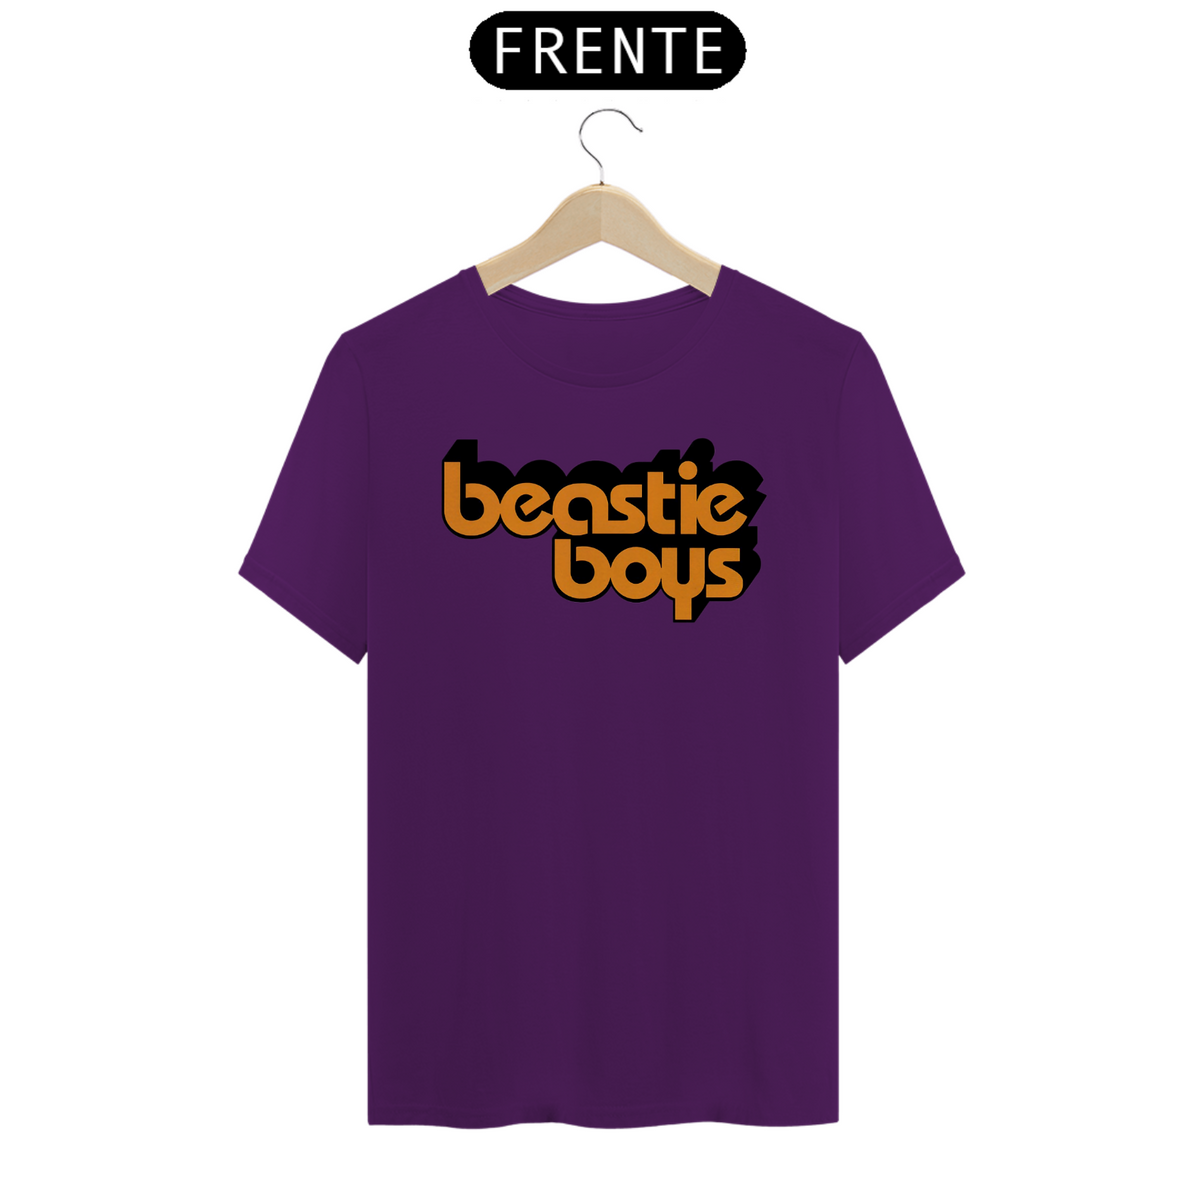 Nome do produto: Beastie Boys